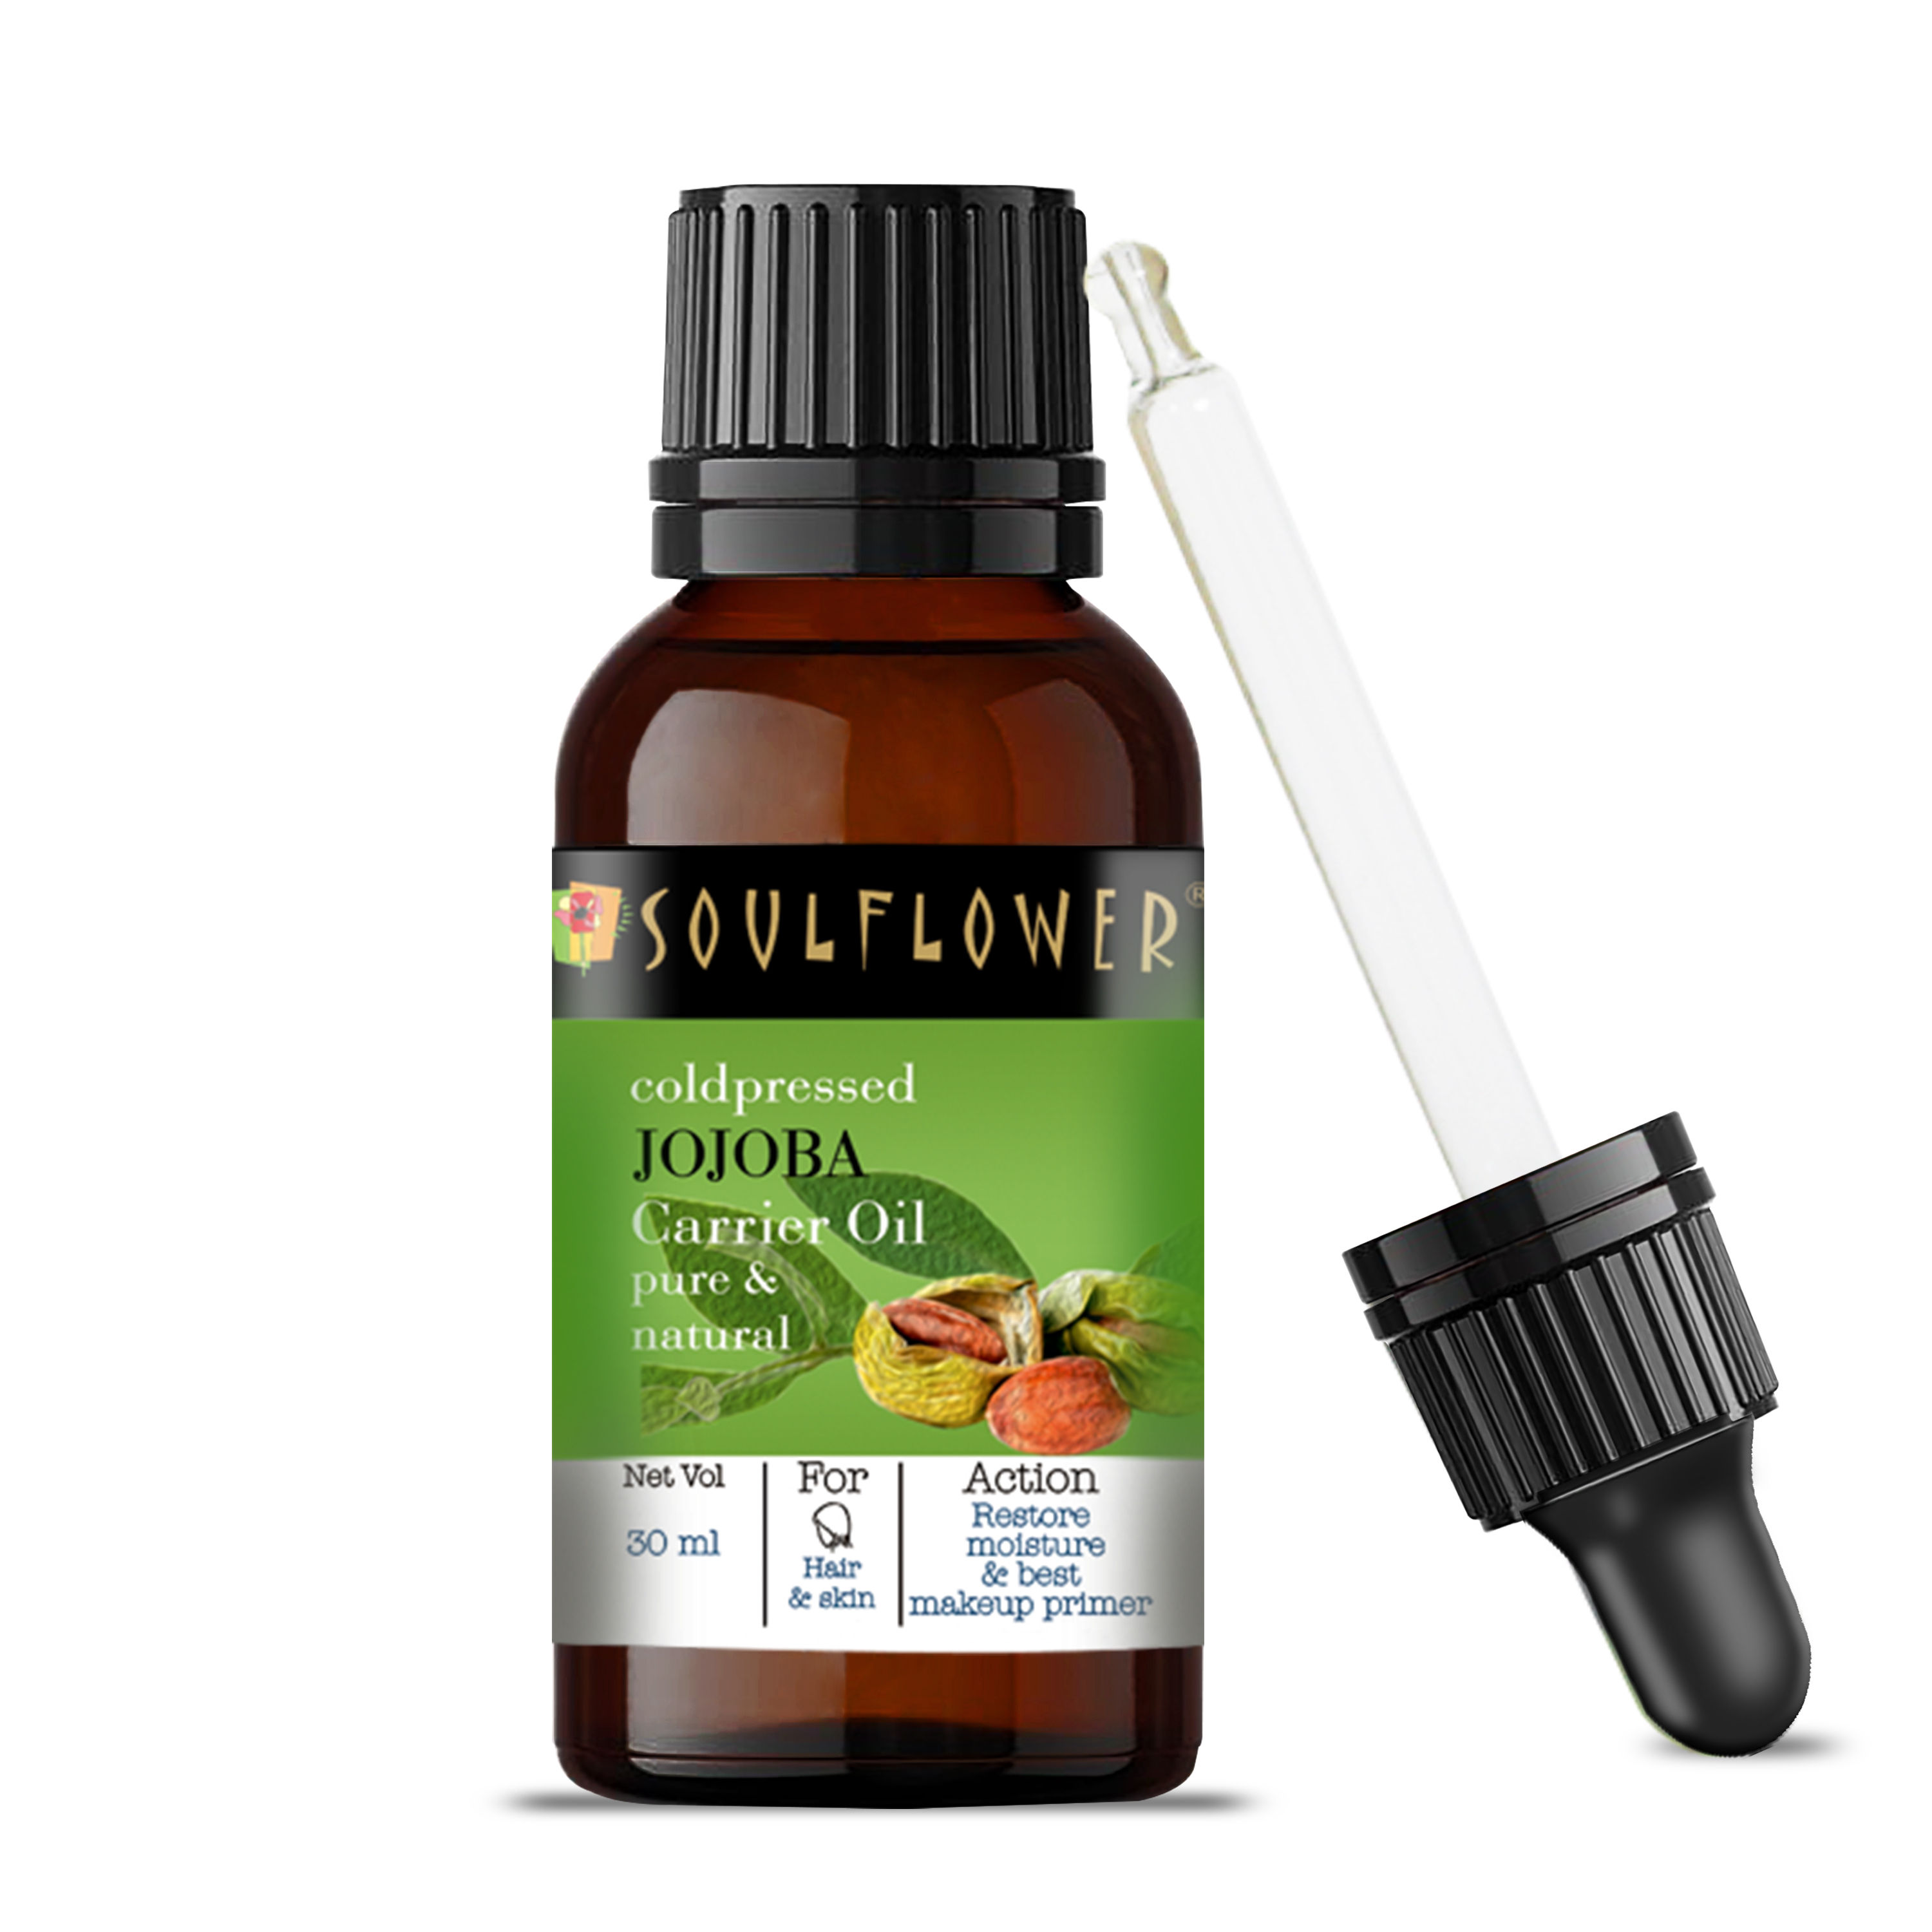 Soulflower Organic Virgin Jojoba Carrier Hair Oil, Skincare, Face & Body, Cold-Pressed